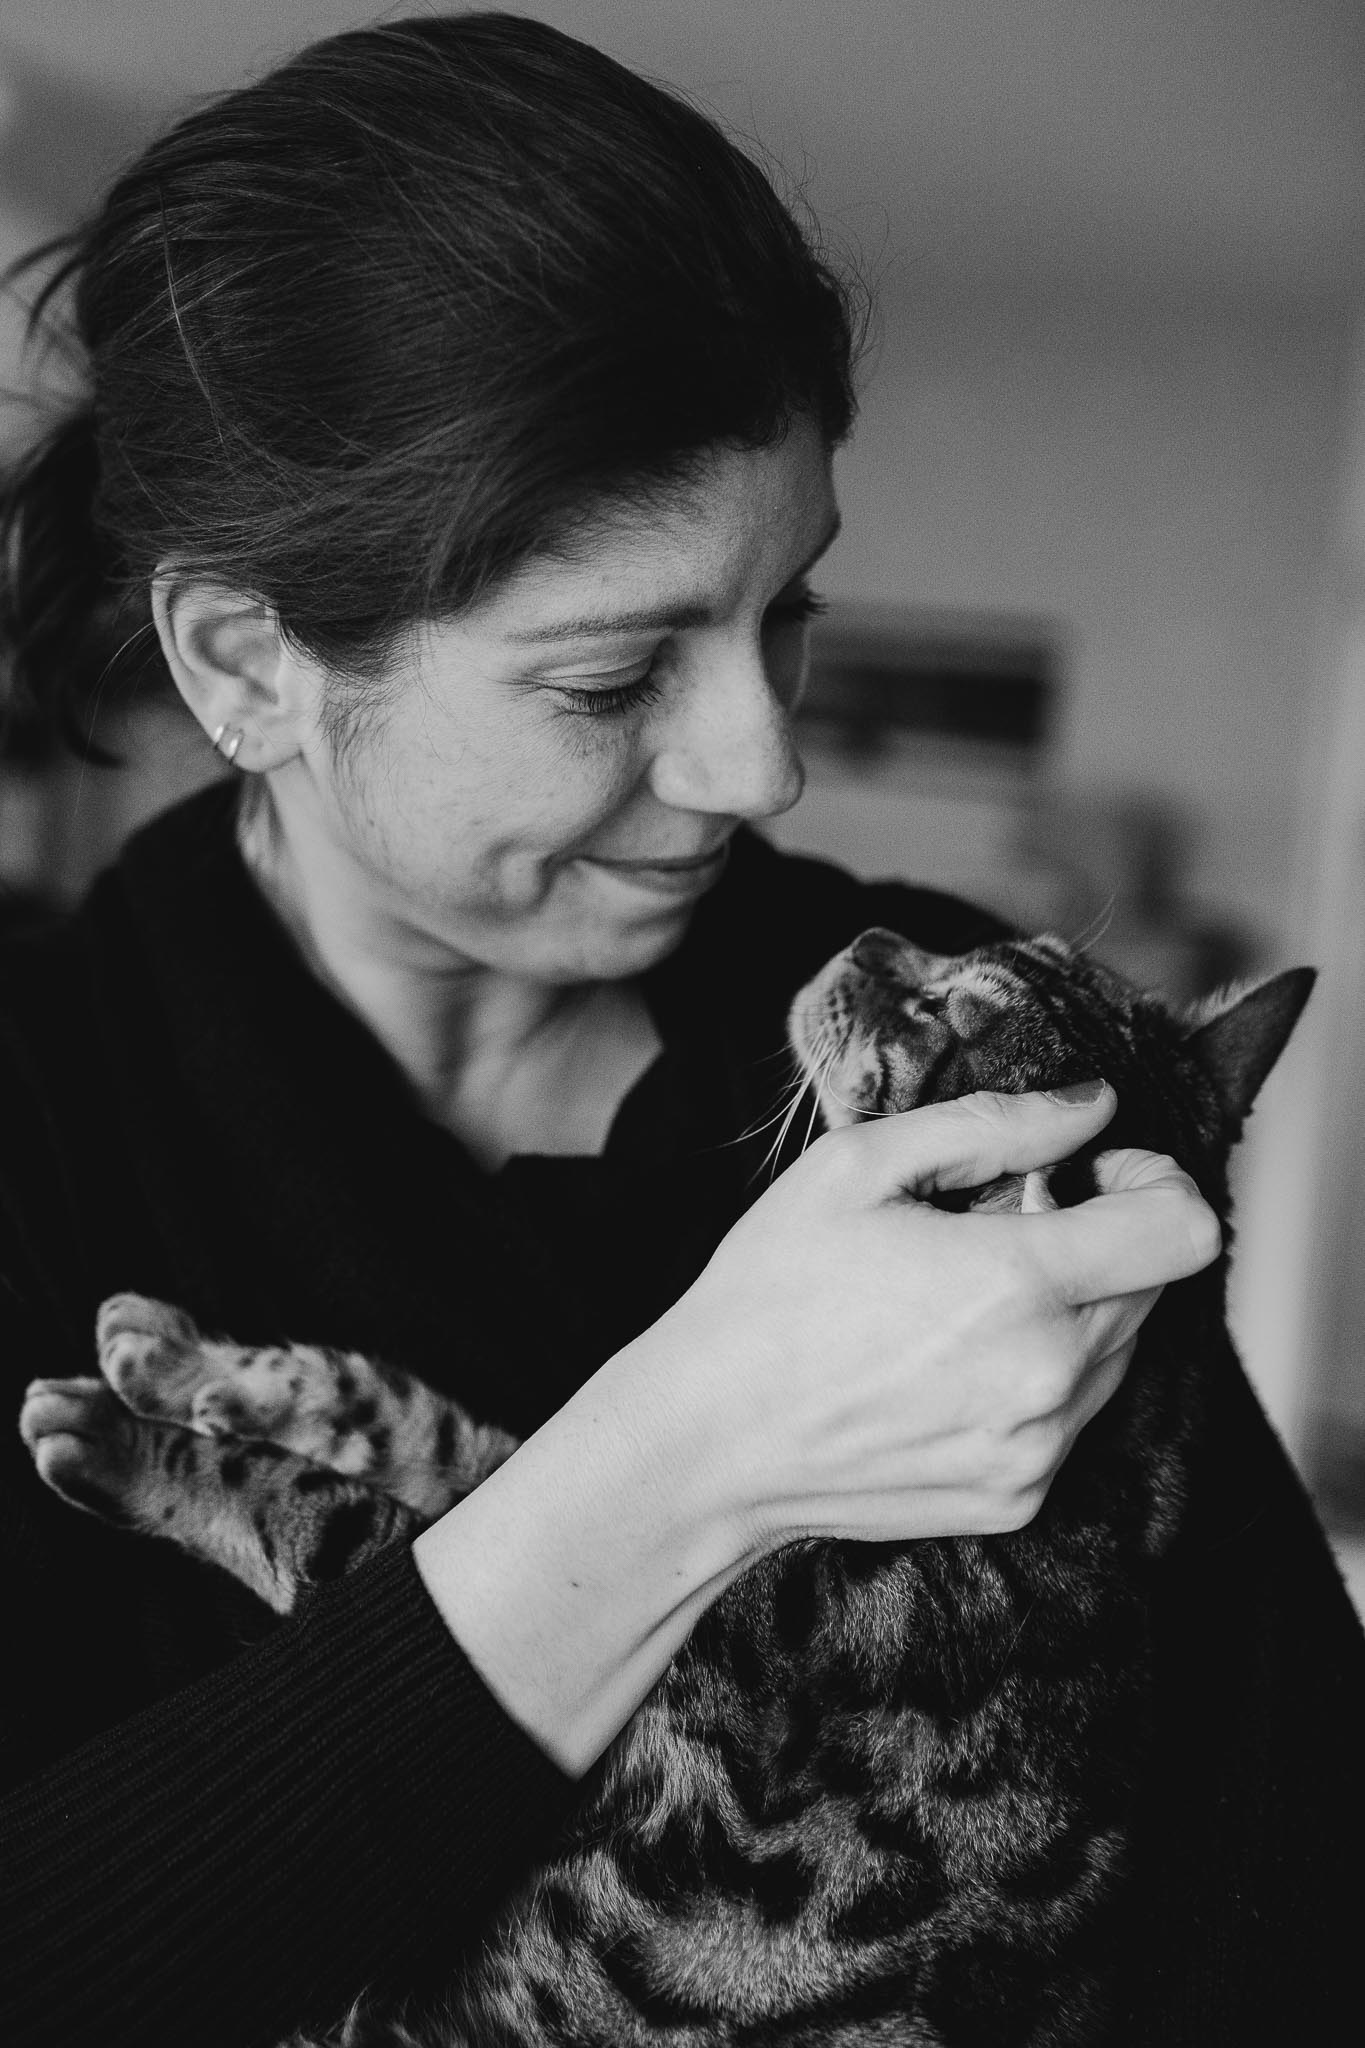 cats and their humans - Katze-Mensch-Portrait mit Verena und Bengalkater Fires